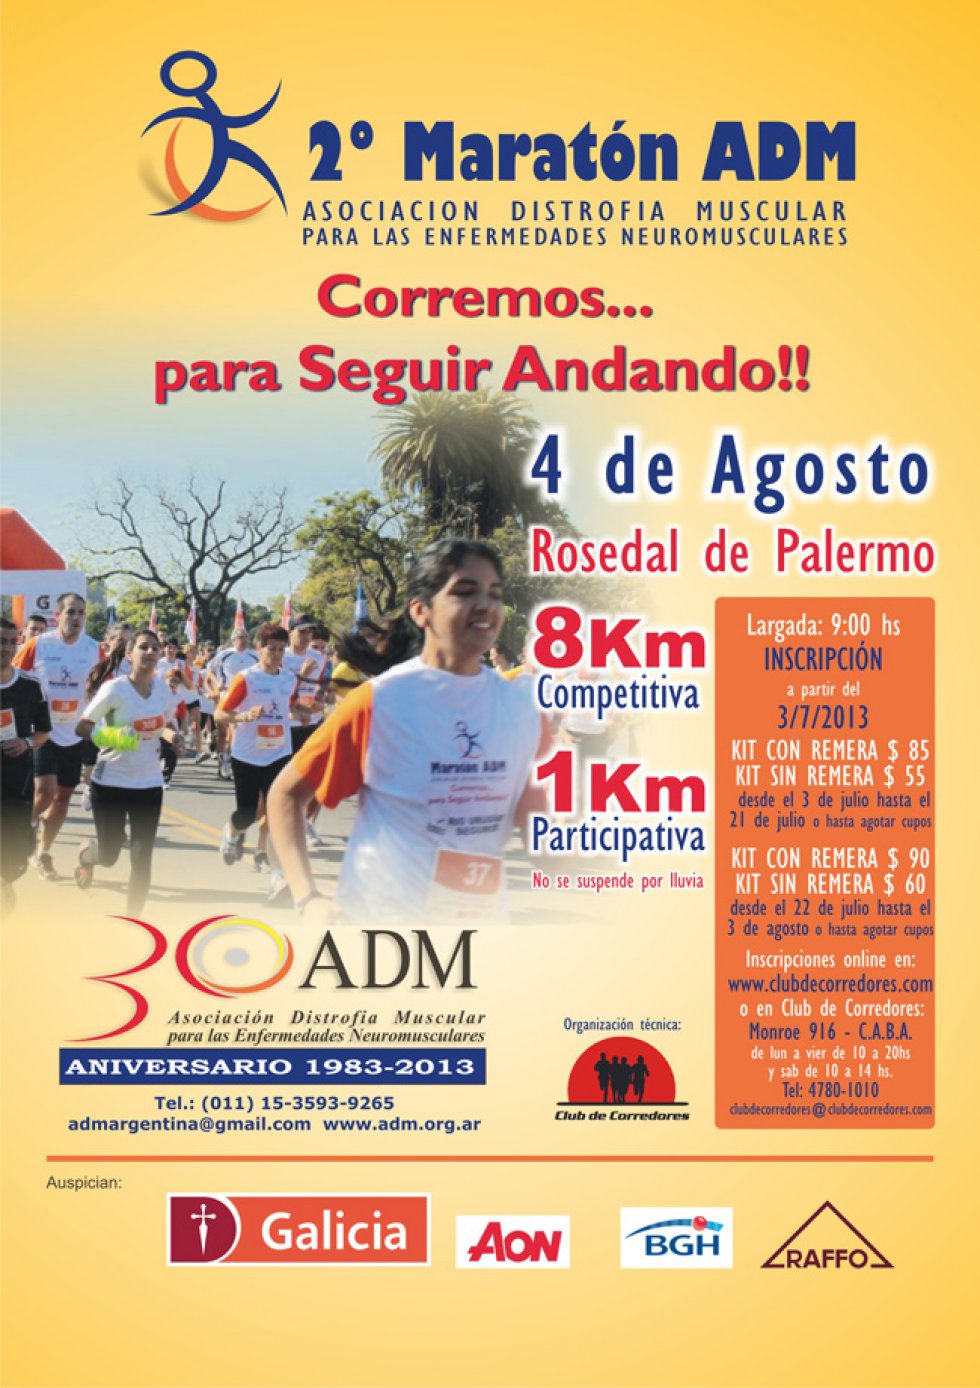 Maratón ADM 2013